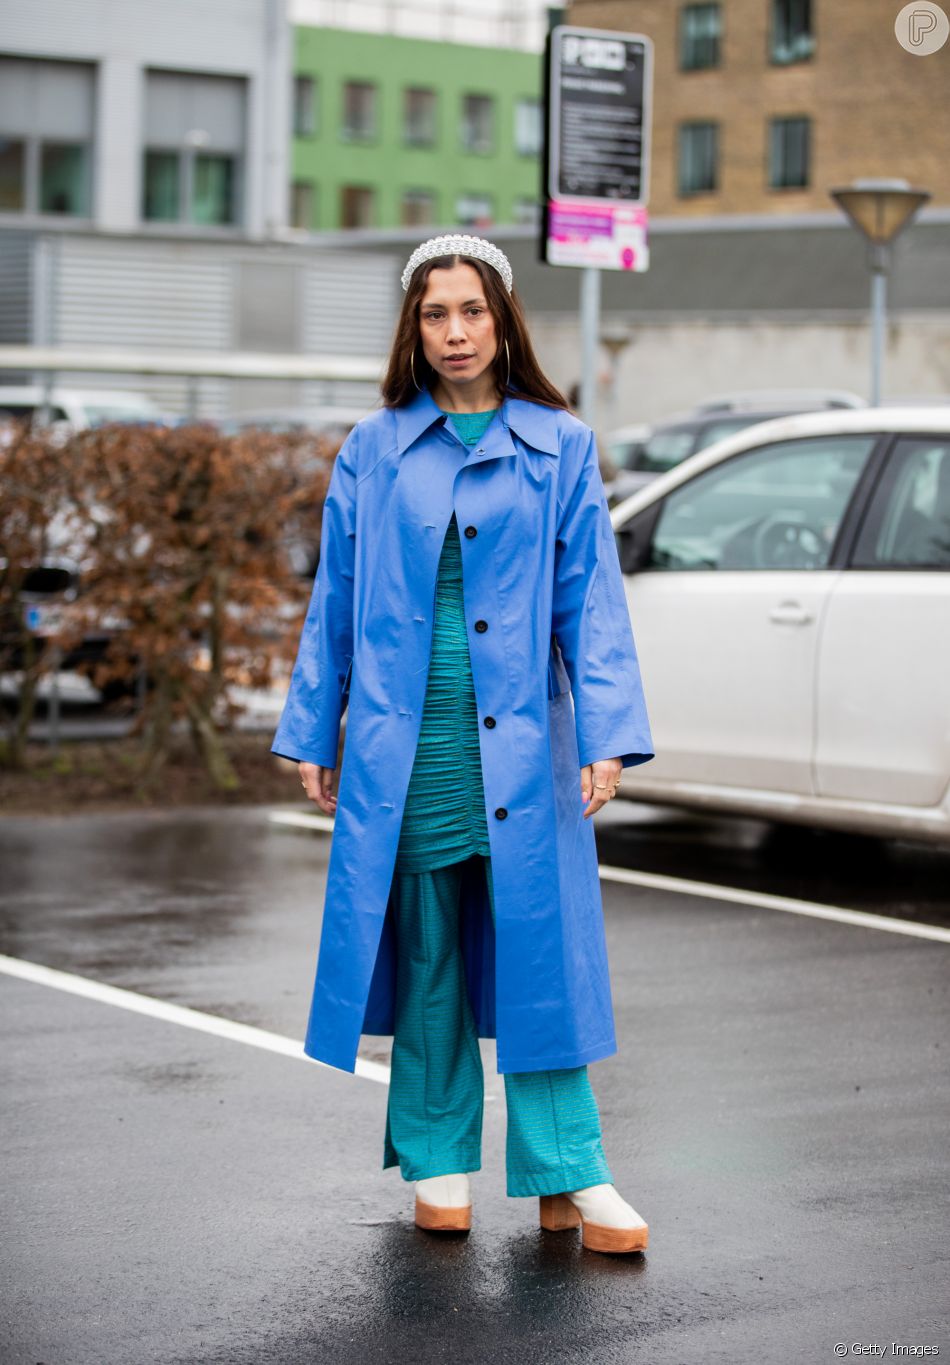 Moda no casaco: modelo longo e maximalista é trend absoluta